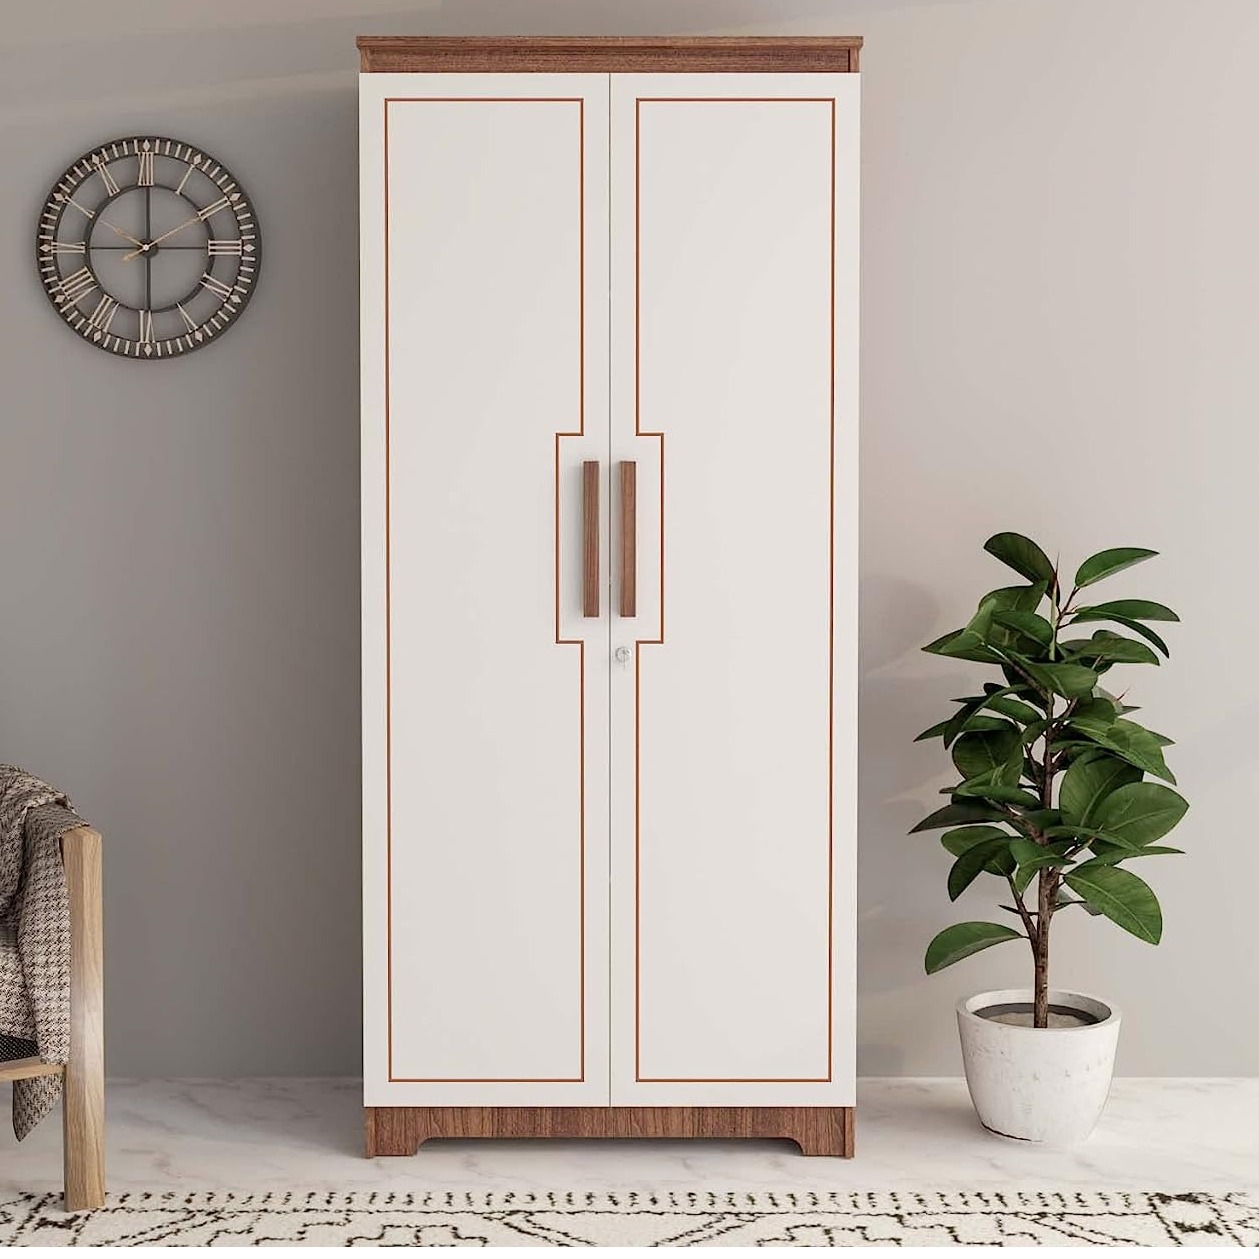  Buy a Modern Double Door Wardrobe Upto 70% off